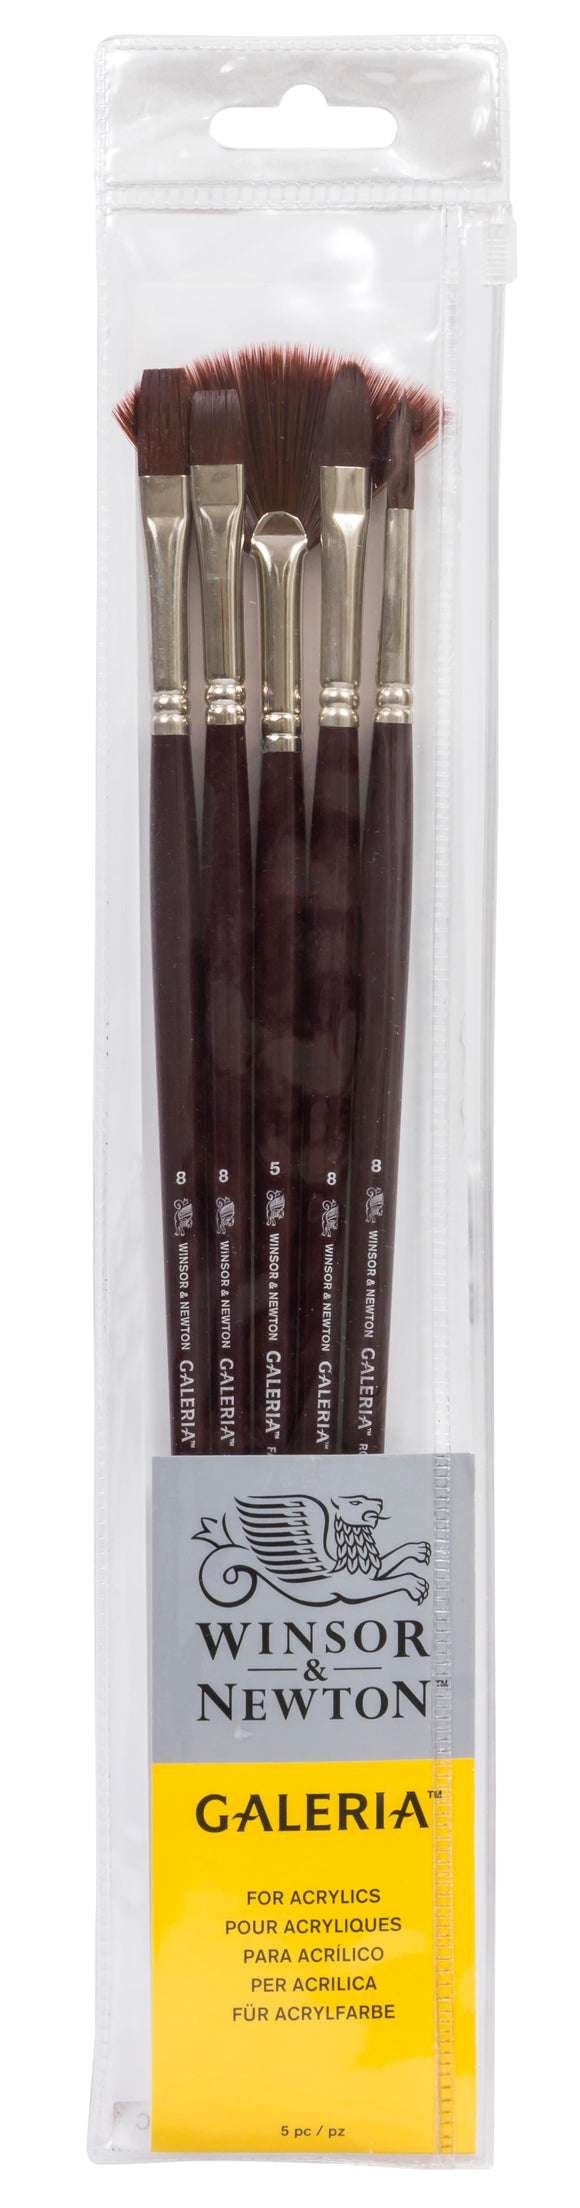 Winsor & Newton Galeria Acrylic Brush Long Handle 5Pk